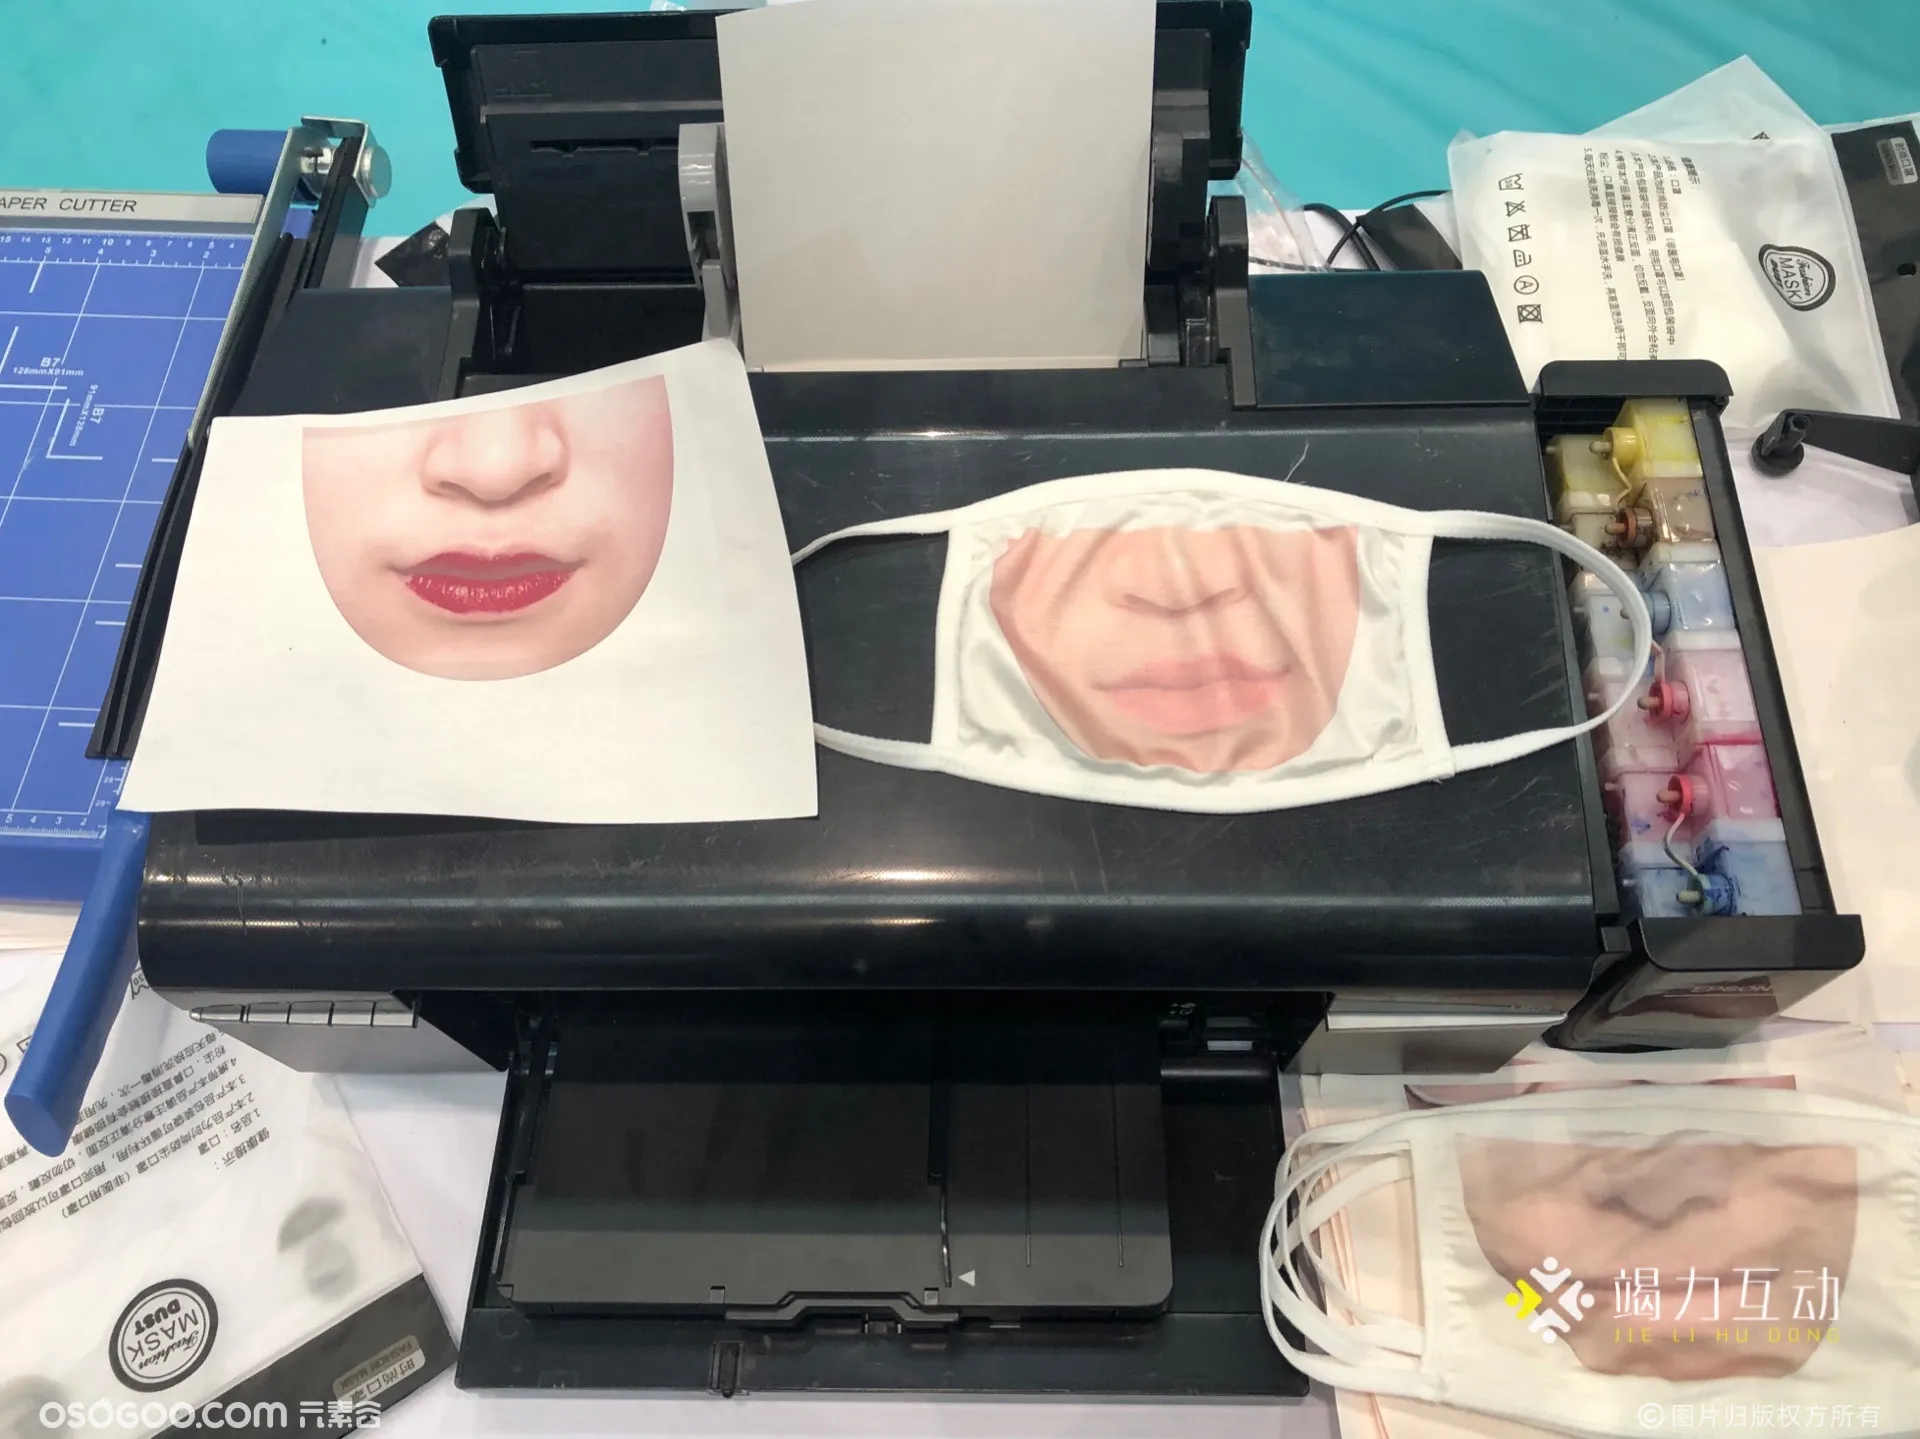 第32届大学生课外学术科技作品竞赛决赛/DIY口罩打印互动